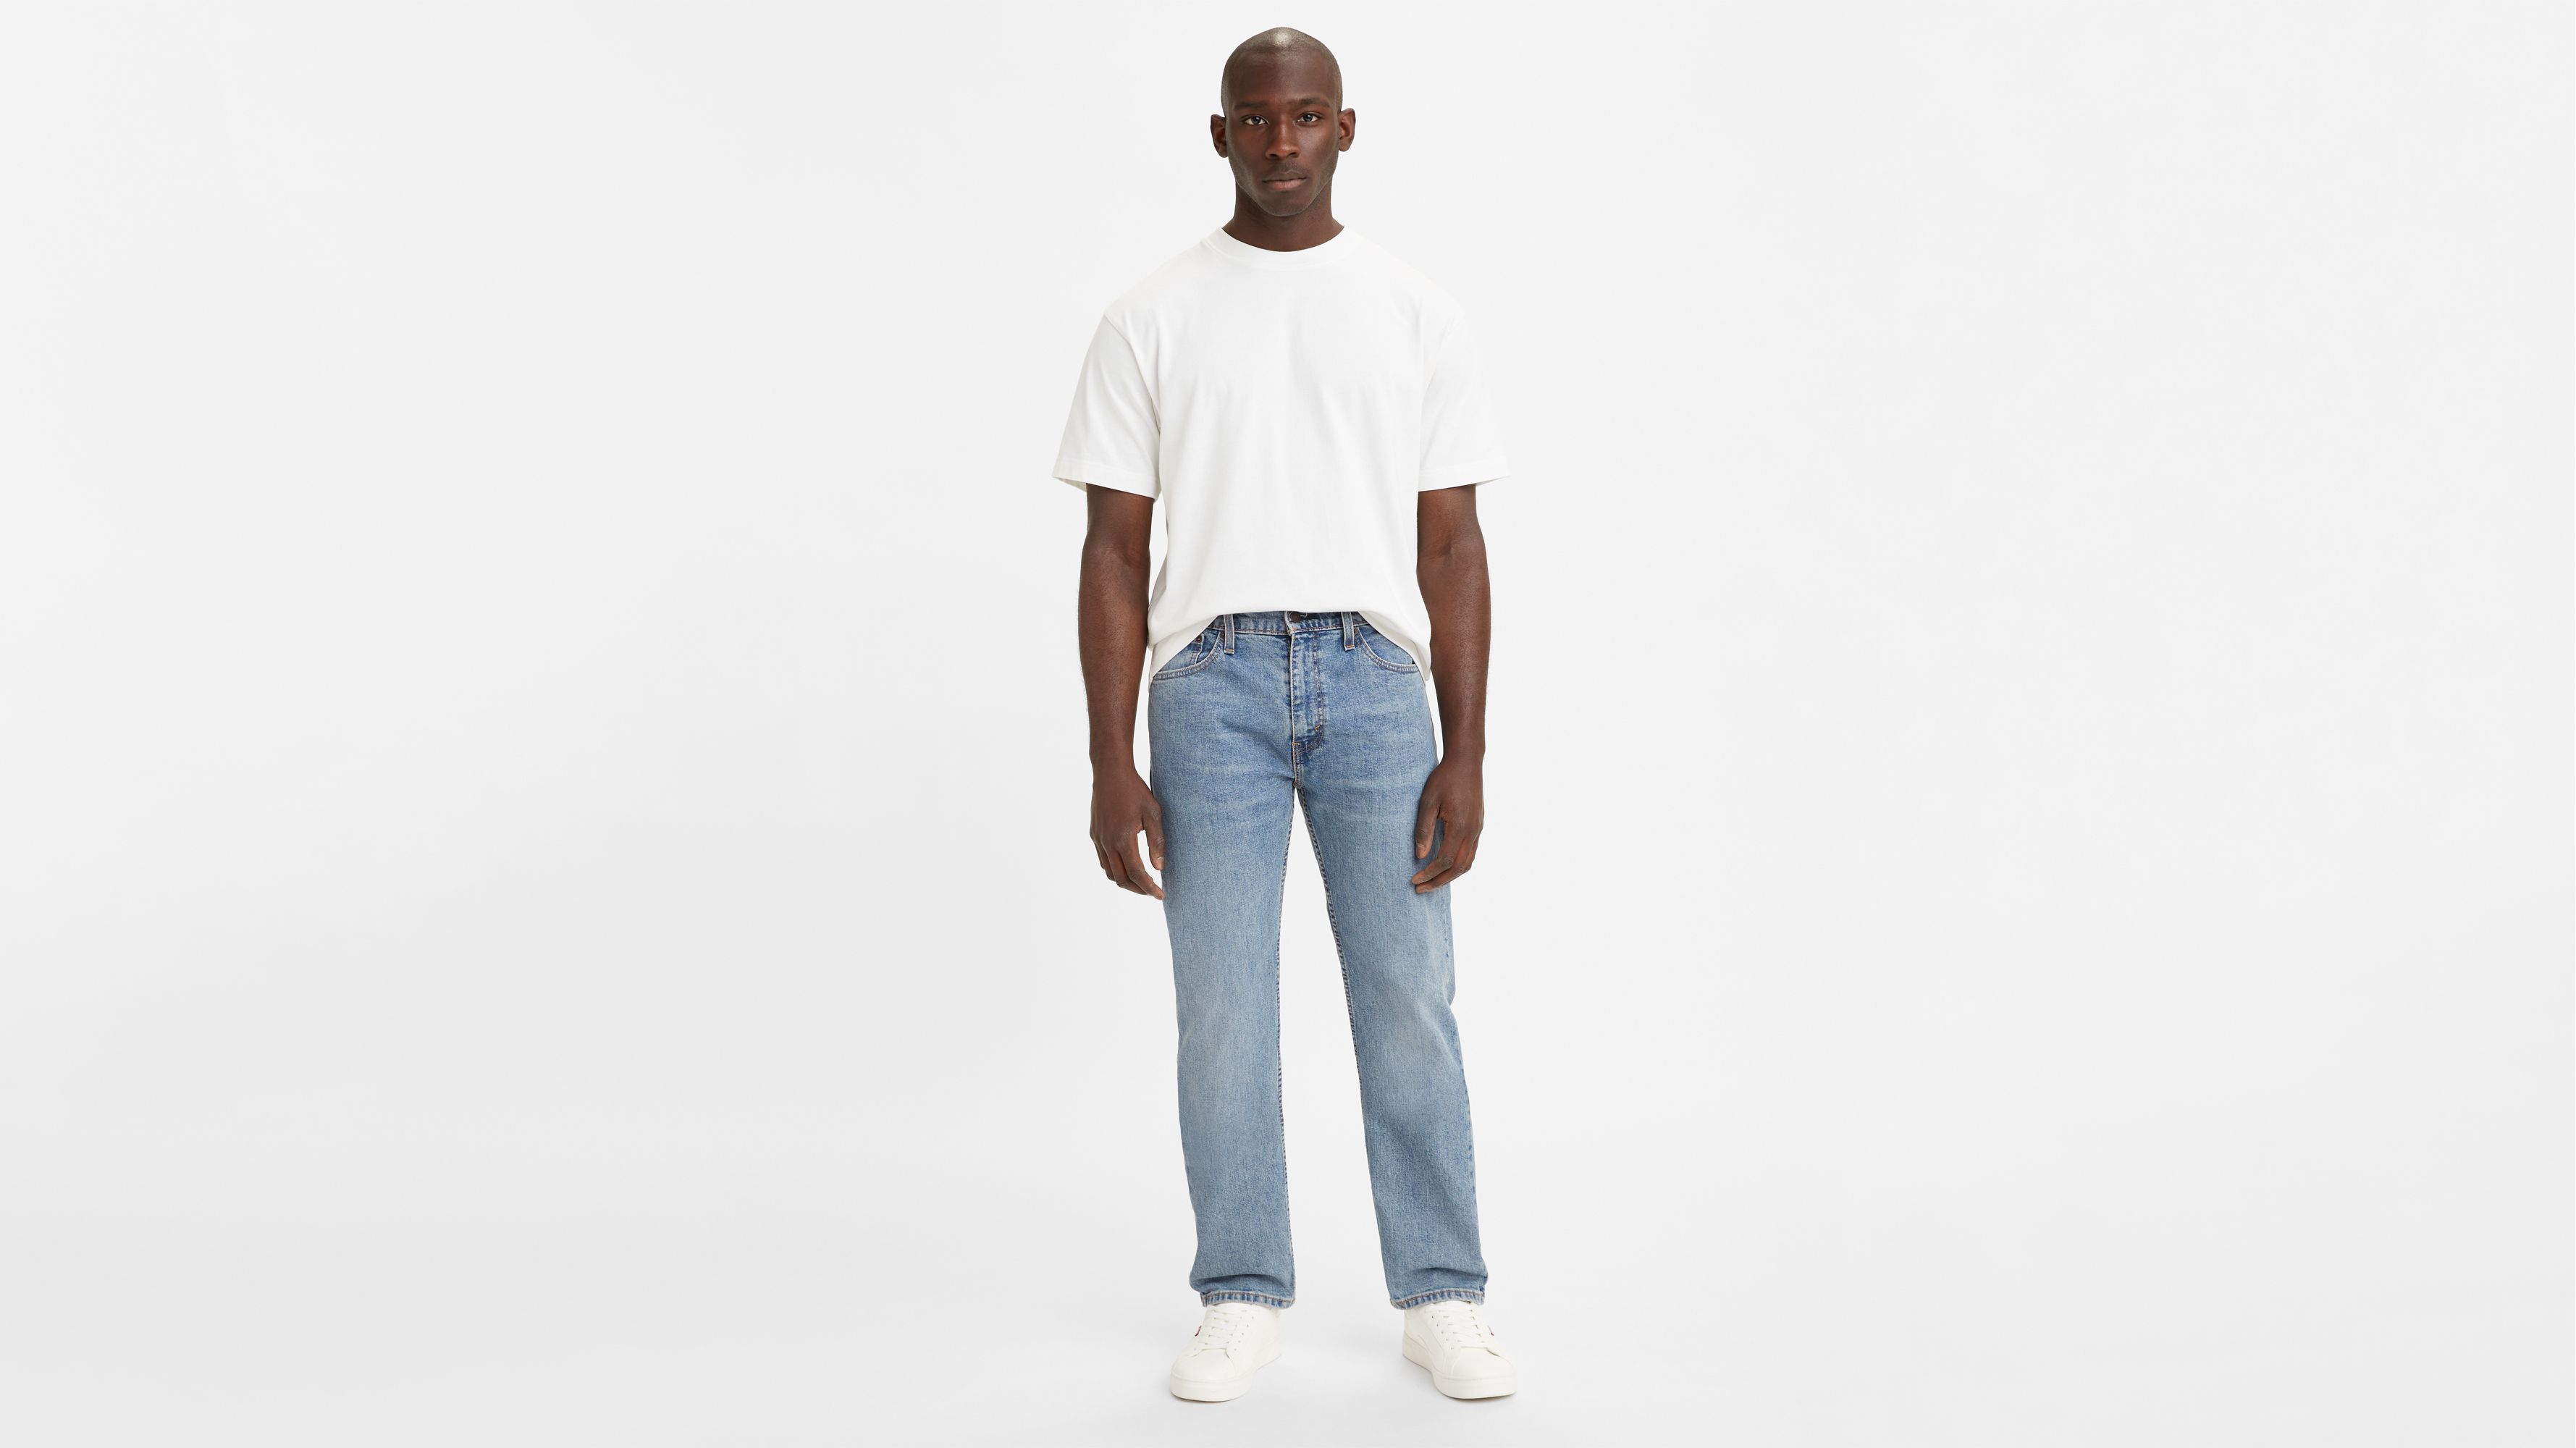 levis 505 jeans